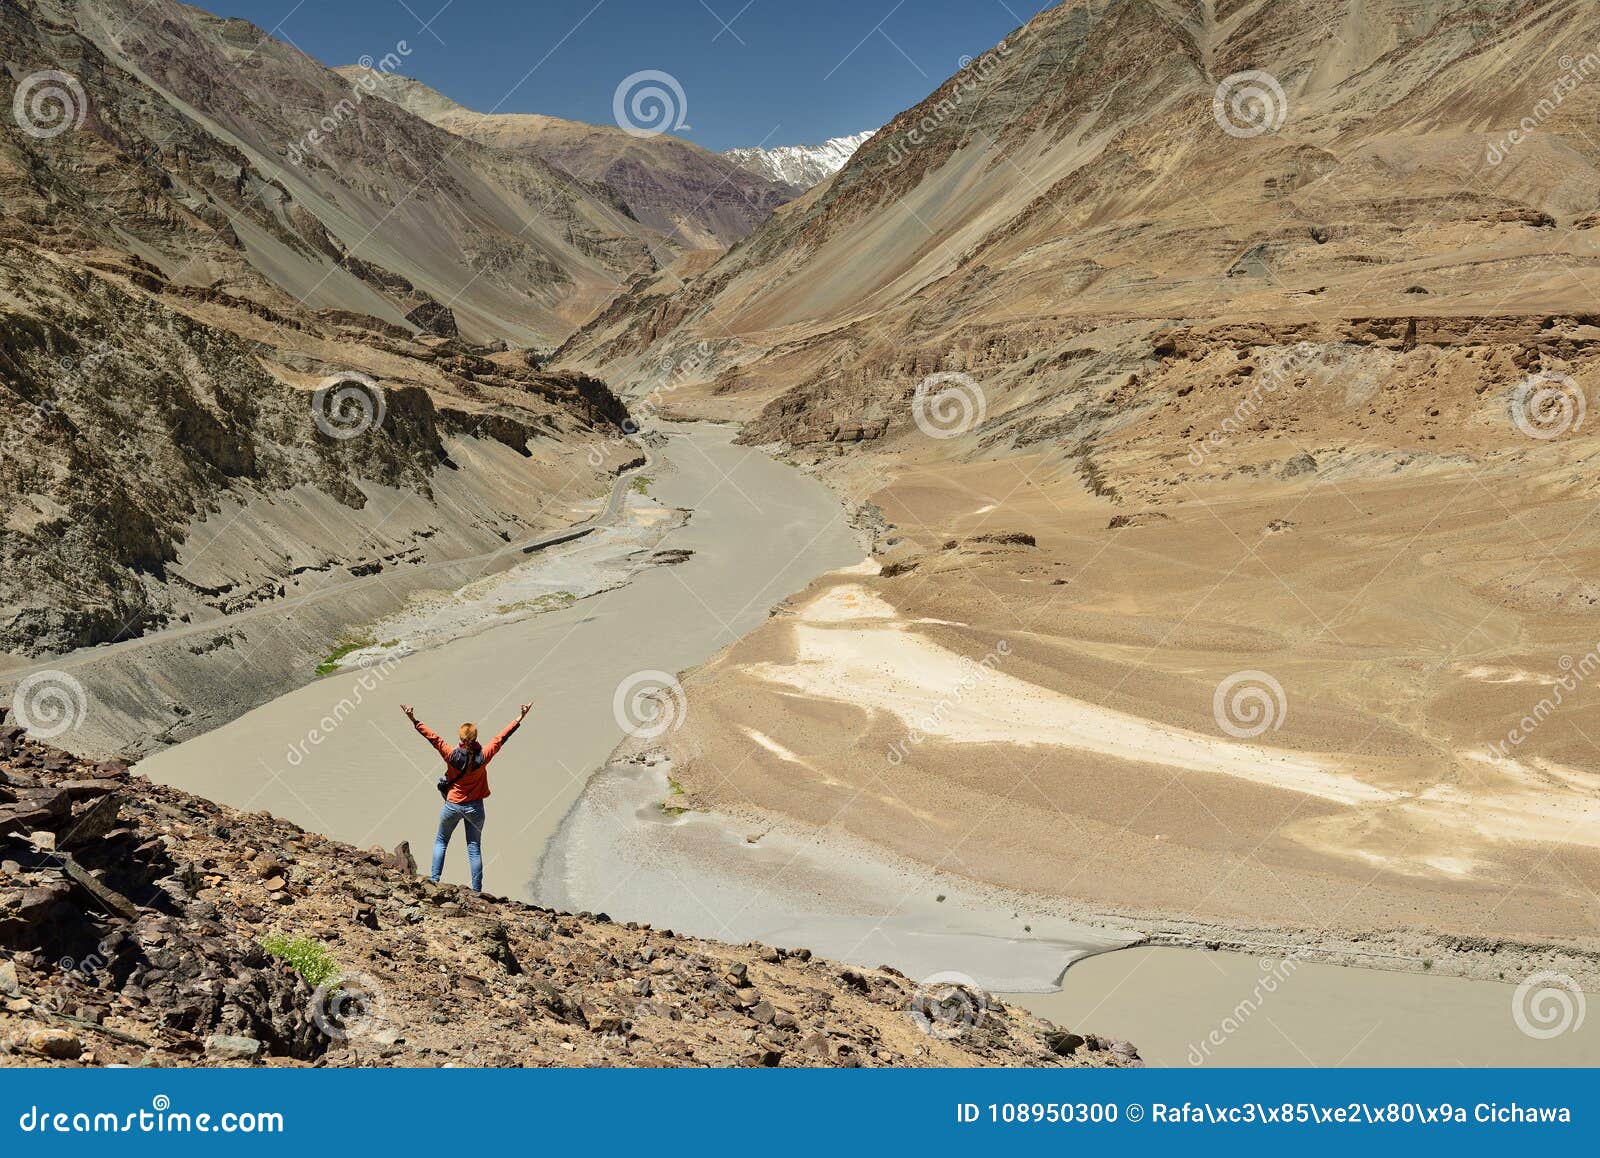 mountains in ladakh in india. zanskar river